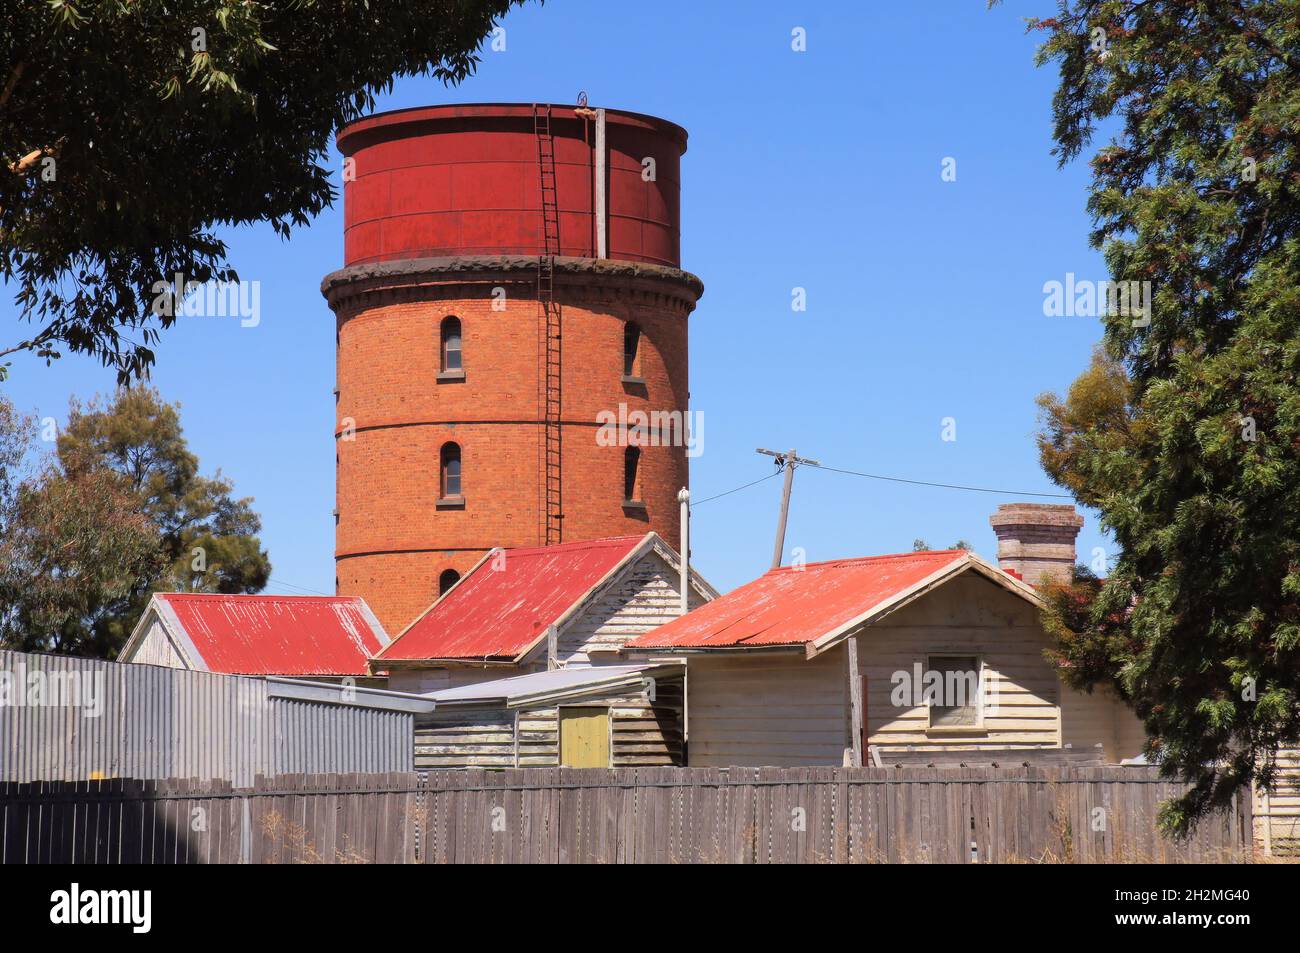 Ancienne tour d'eau de chemin de fer en brique rouge et chalets en panneaux d'intempéries avec rooves en fer ondulé rouge à Warracknabeal, Wimmera Mallee, Victoria, Australie Banque D'Images